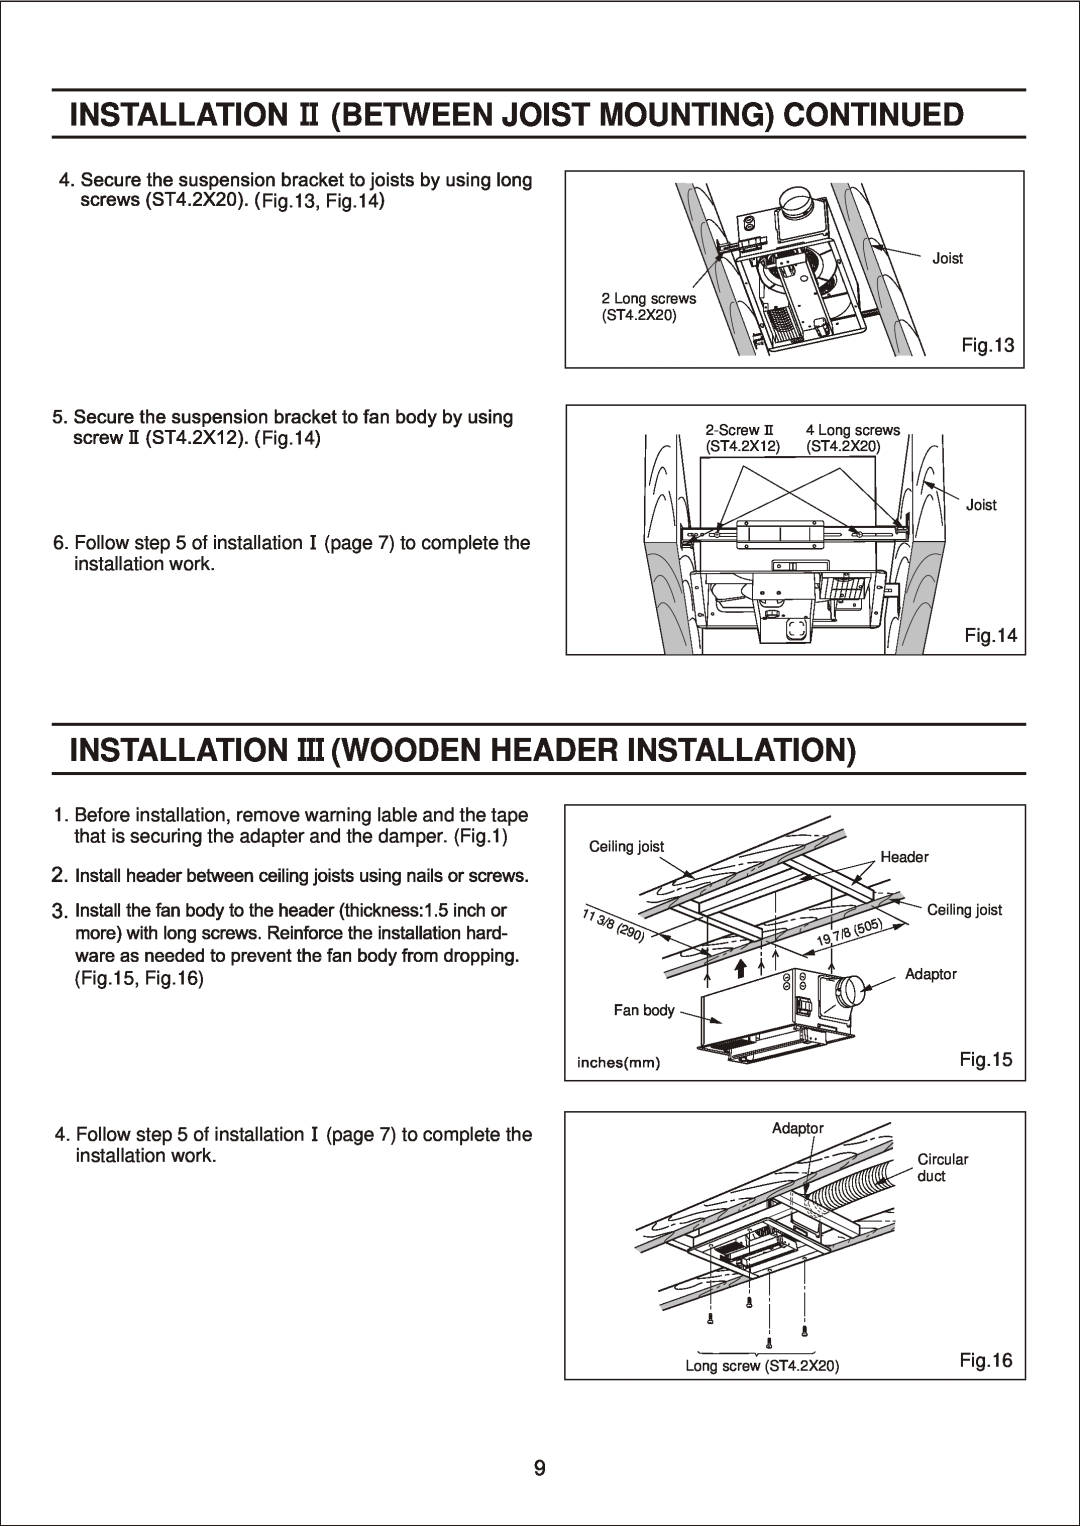 Panasonic FV-11VH2 manual Installation Between Joist Mounting Continued, Installation Wooden Header Installation 